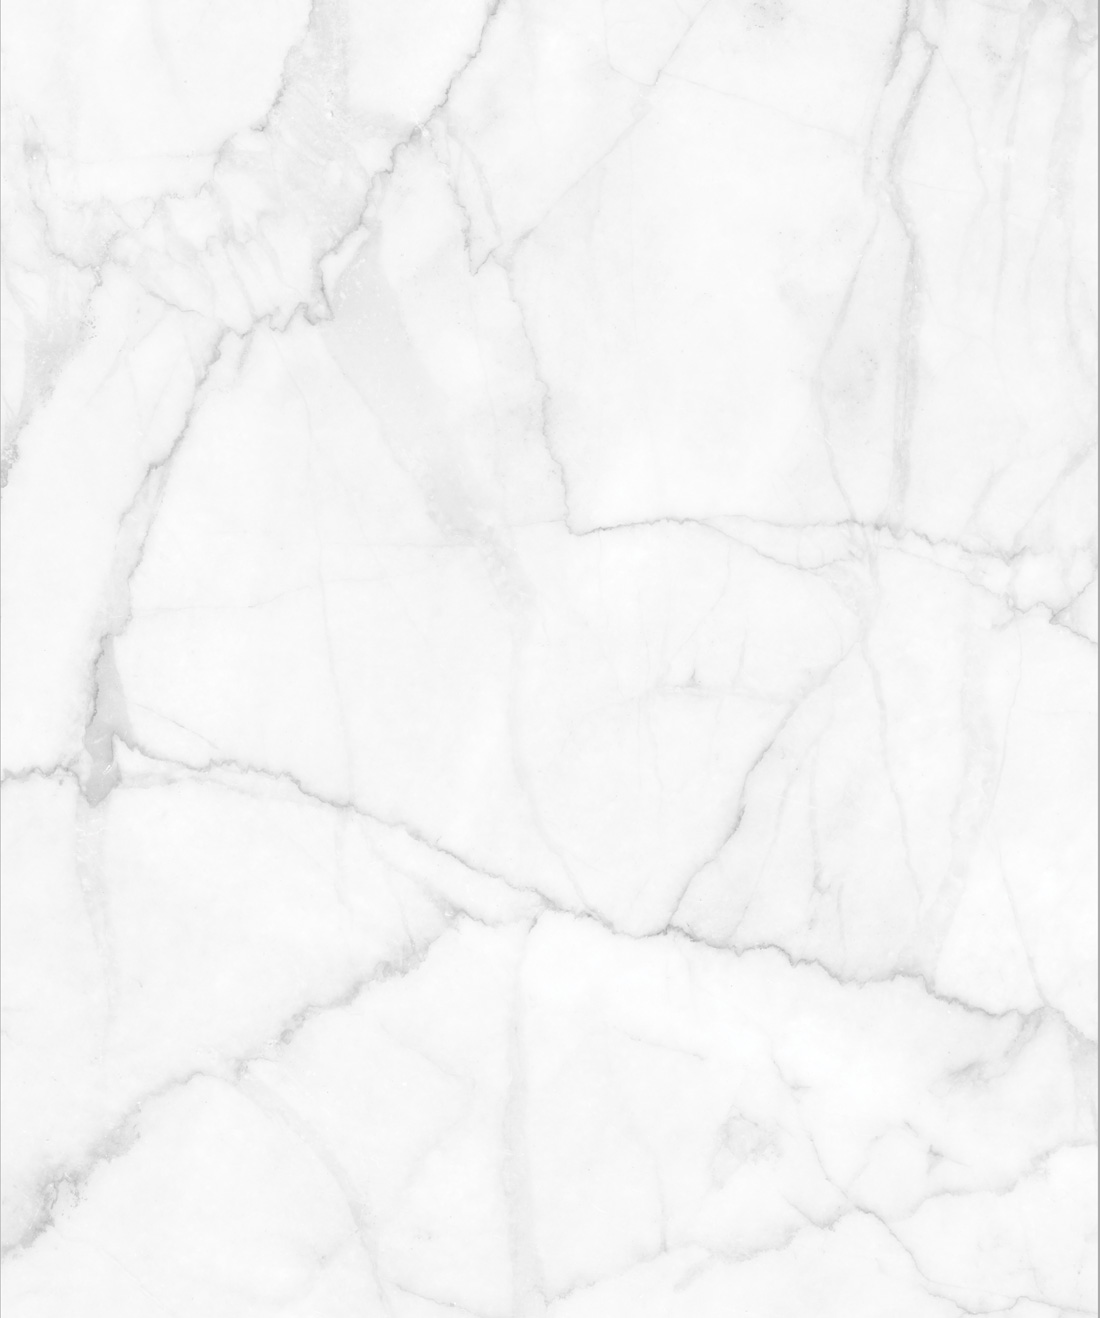 Họa tiết marble trên tường là xu hướng được yêu thích trong trang trí nội thất. Nếu bạn đang tìm kiếm một bức tường đẹp mắt và sang trọng cho phòng khách hay phòng ngủ, chắc chắn bạn sẽ tìm thấy sự lựa chọn hoàn hảo với những mẫu họa tiết marble wallpaper đa dạng và độc đáo. 